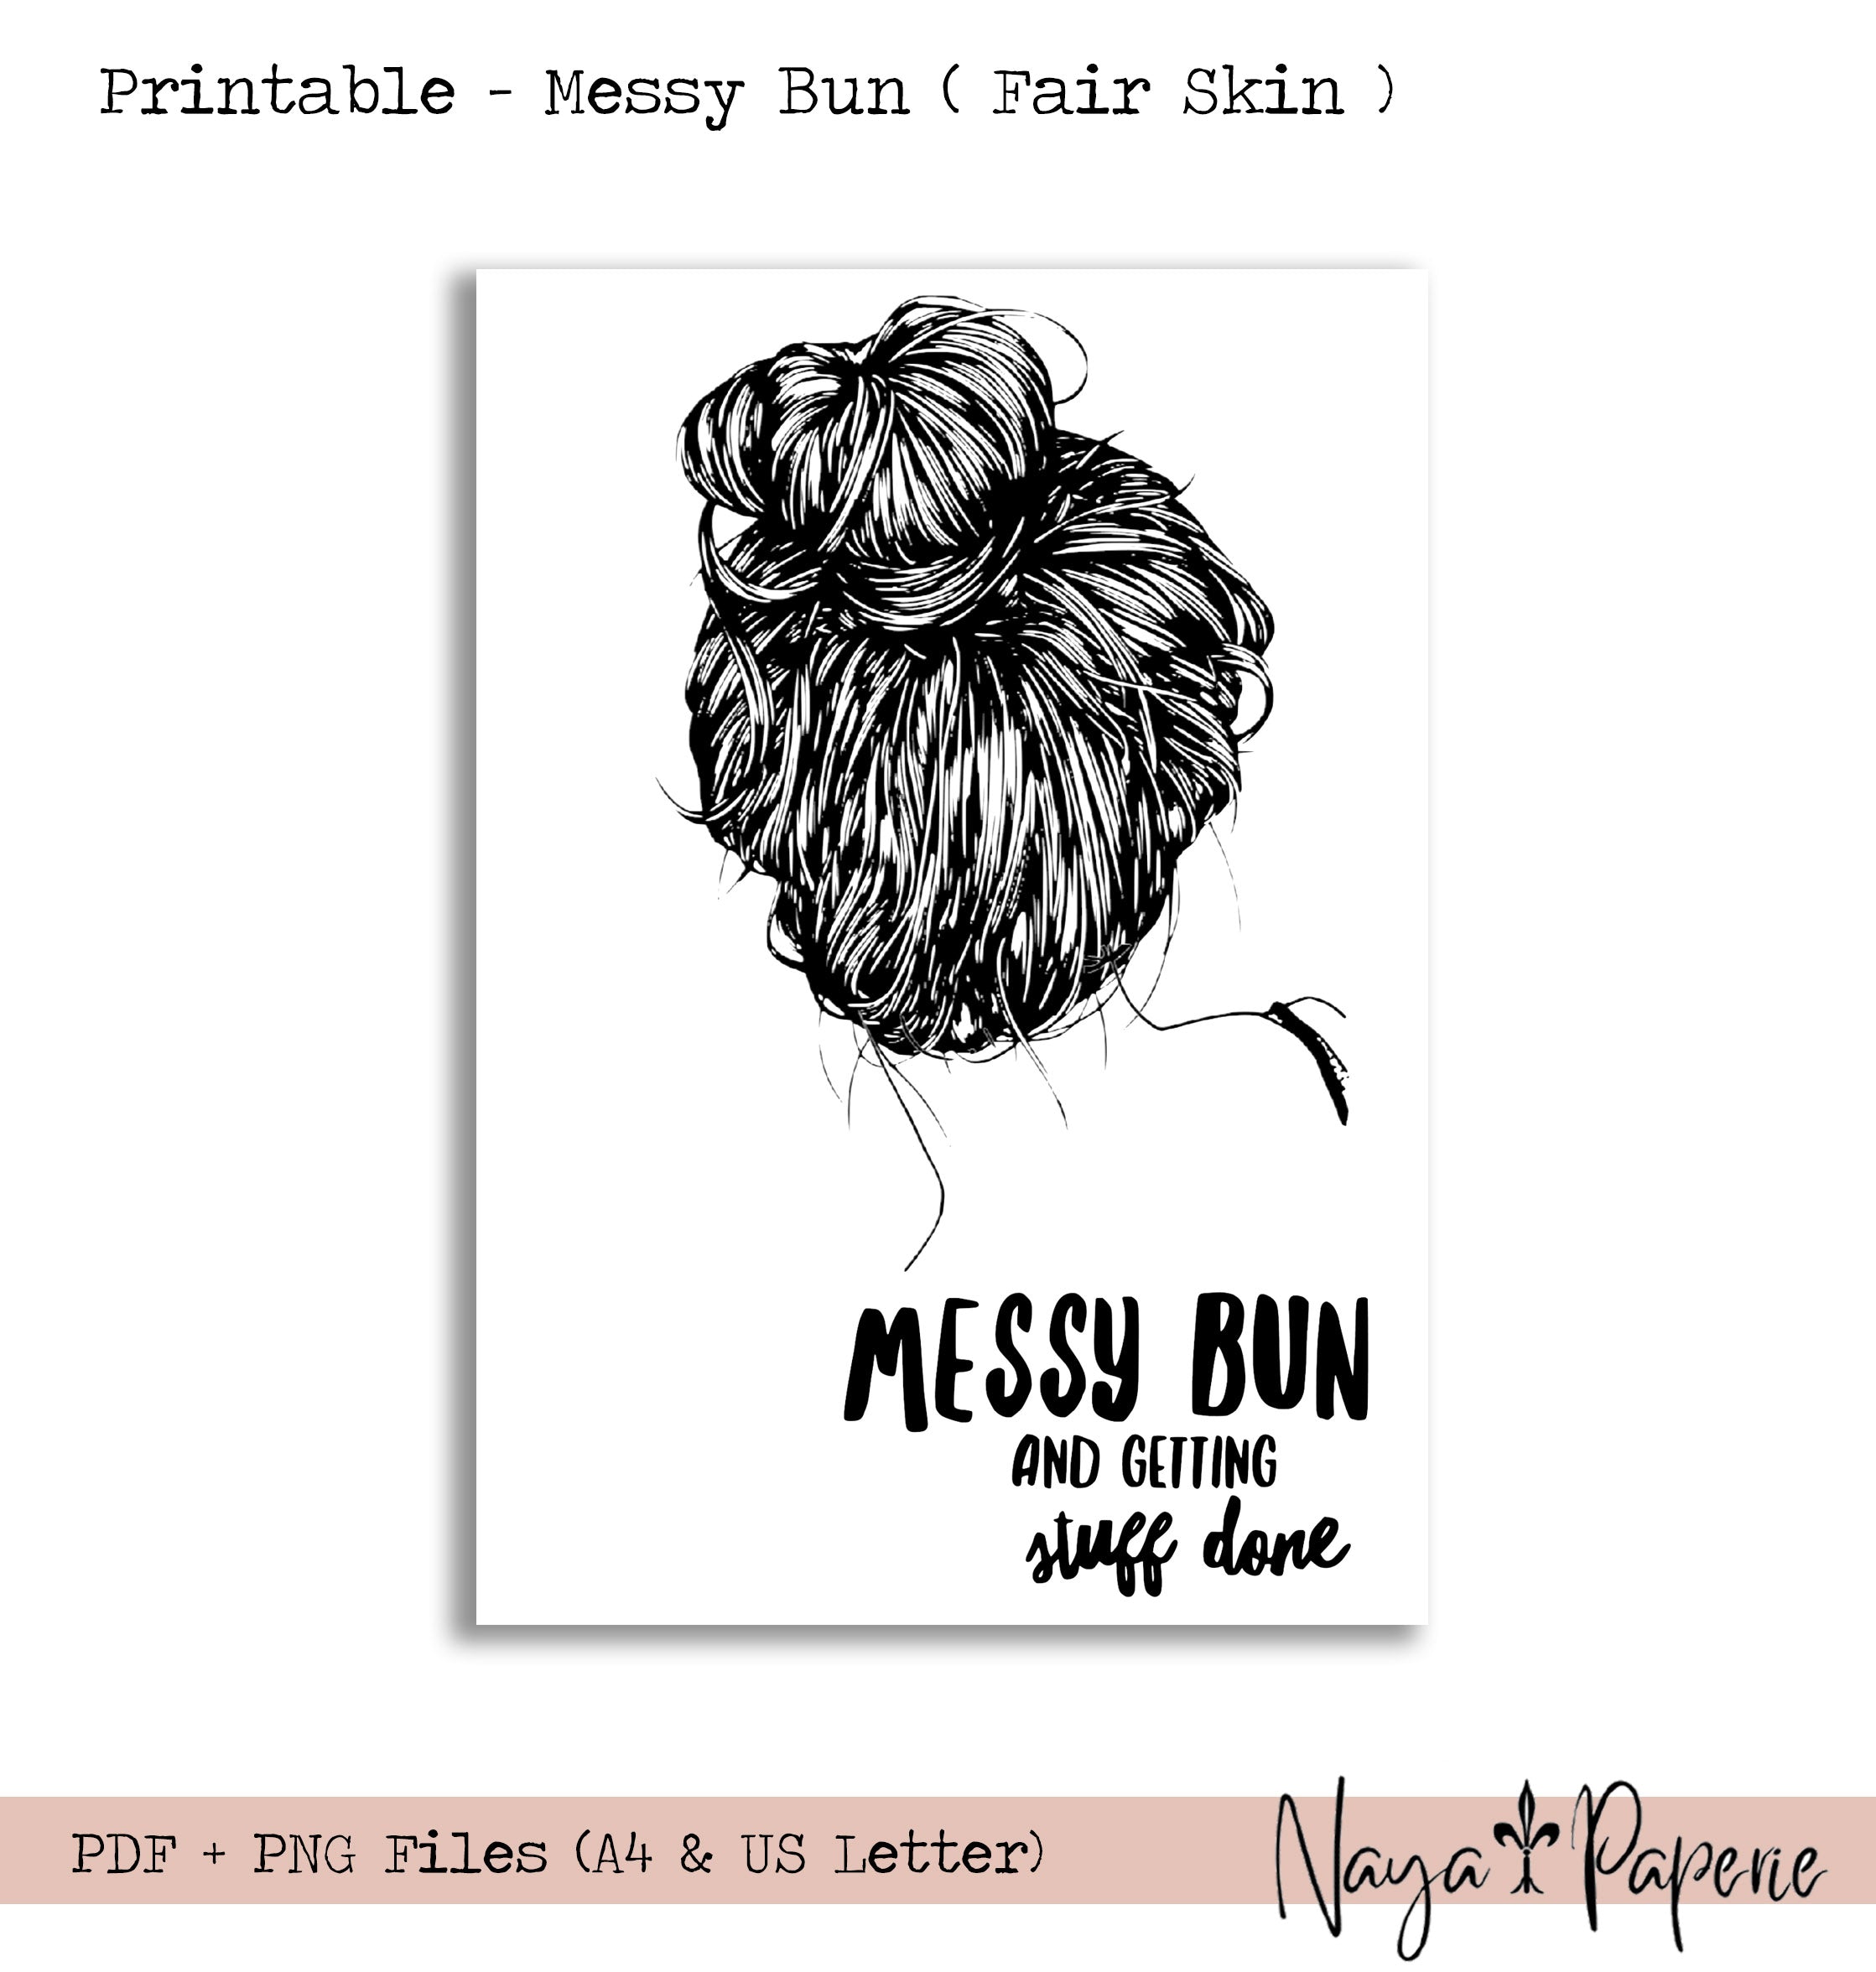 Messy Bun (fair skin) - Printable Dashboard